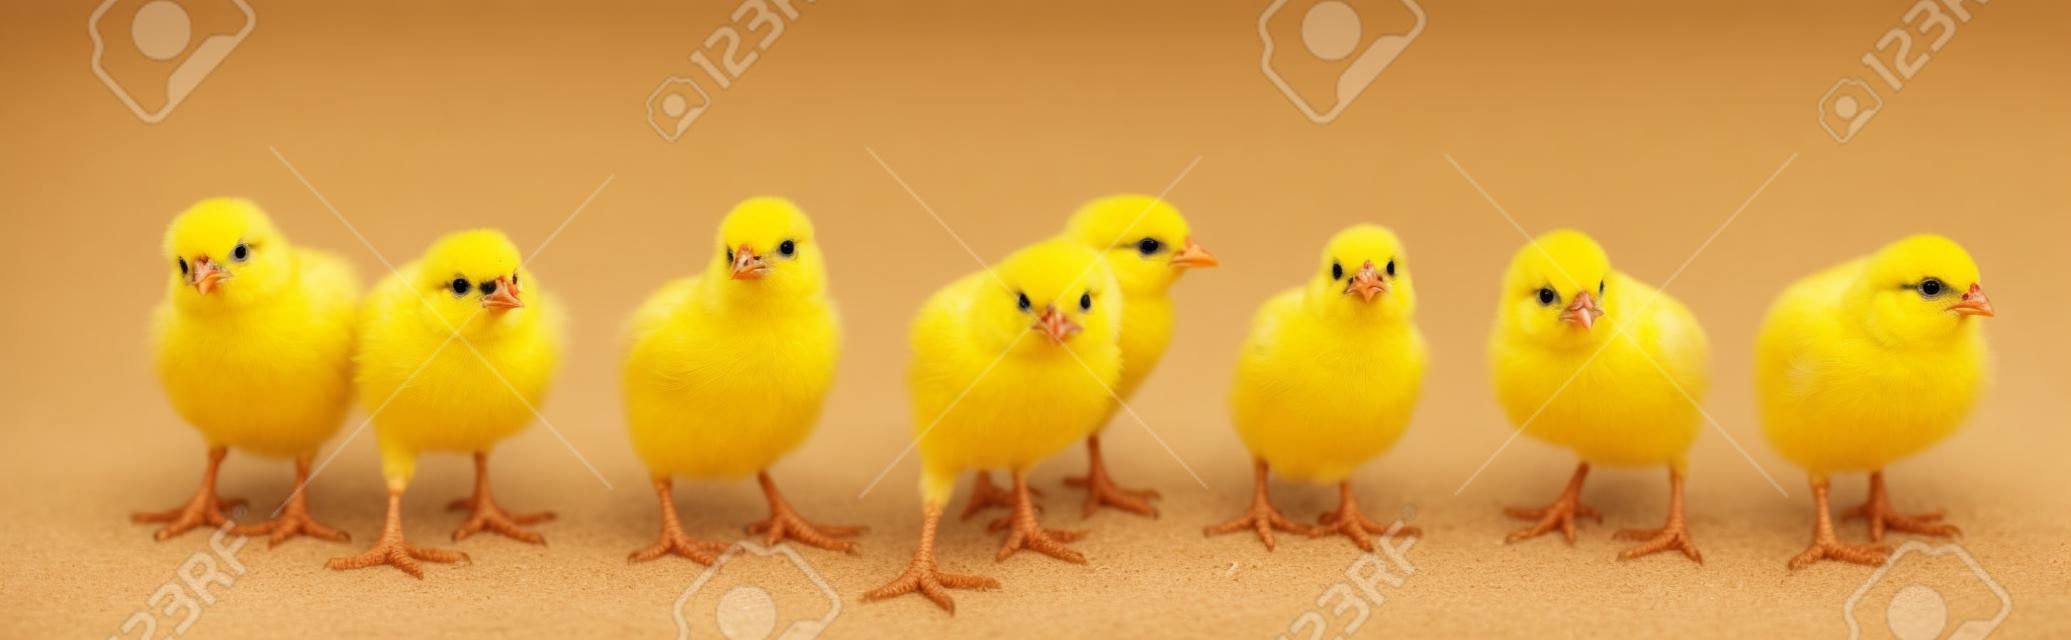 Panorama van broedende kleine gele kuikens geïsoleerd op witte achtergrond. Boerderij incubator kippen op wandeling.